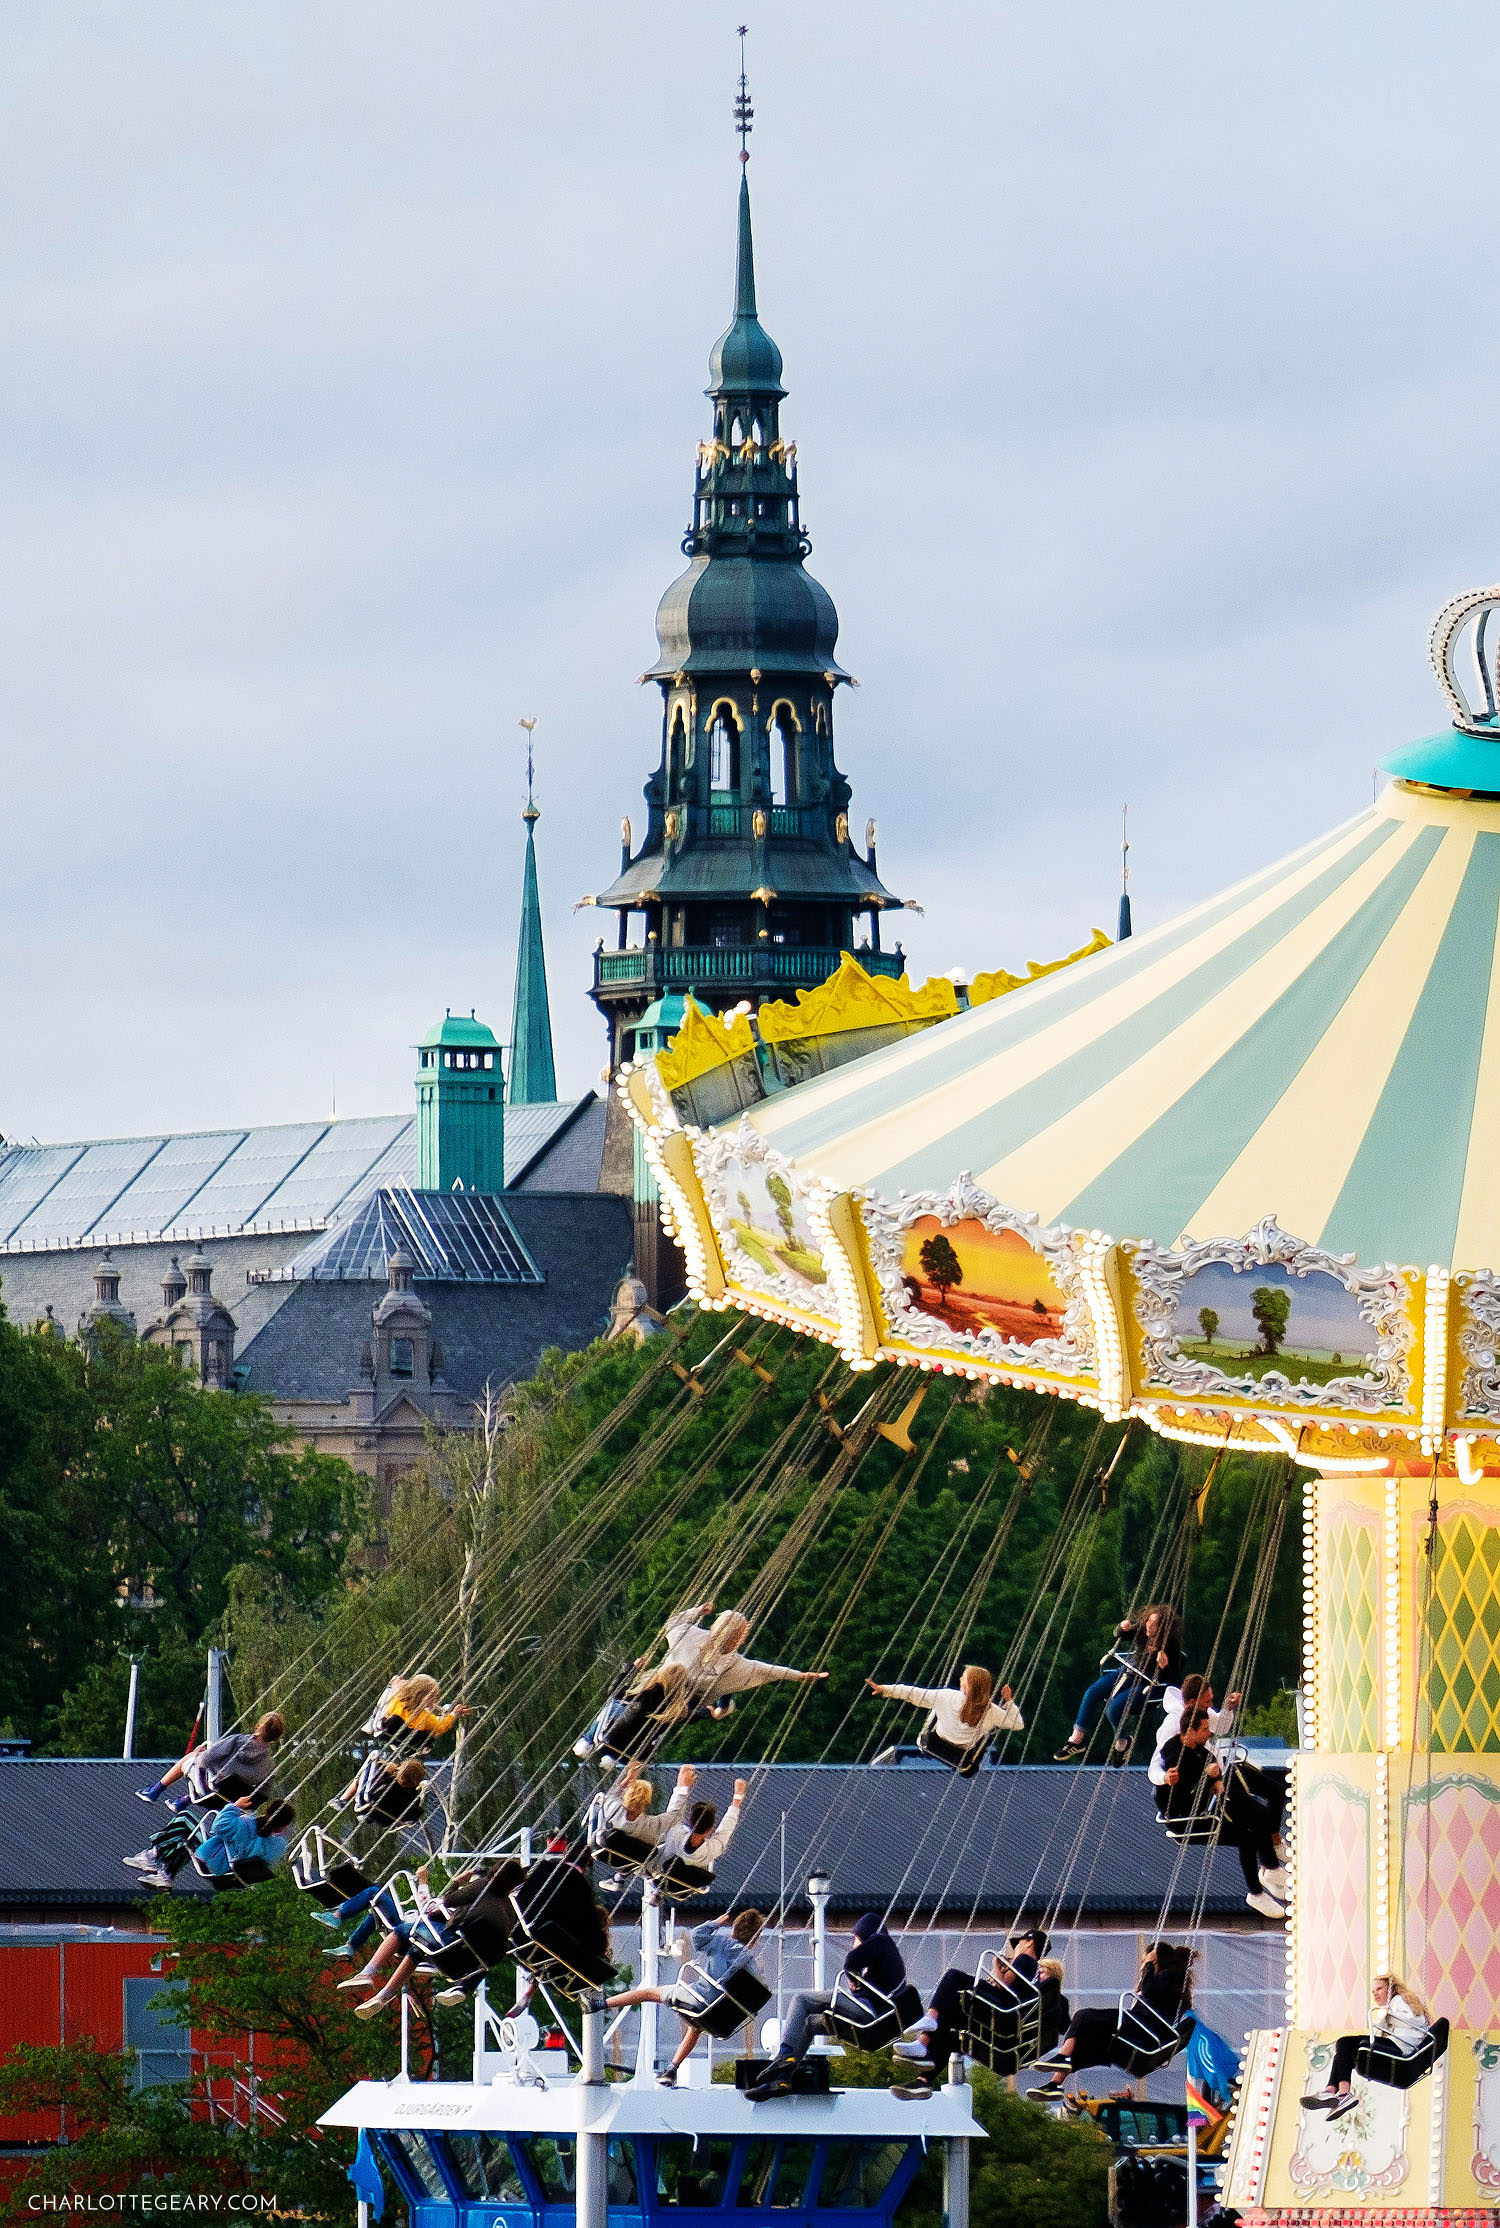 Gröna Lund, Stockholm's waterfront amusement park